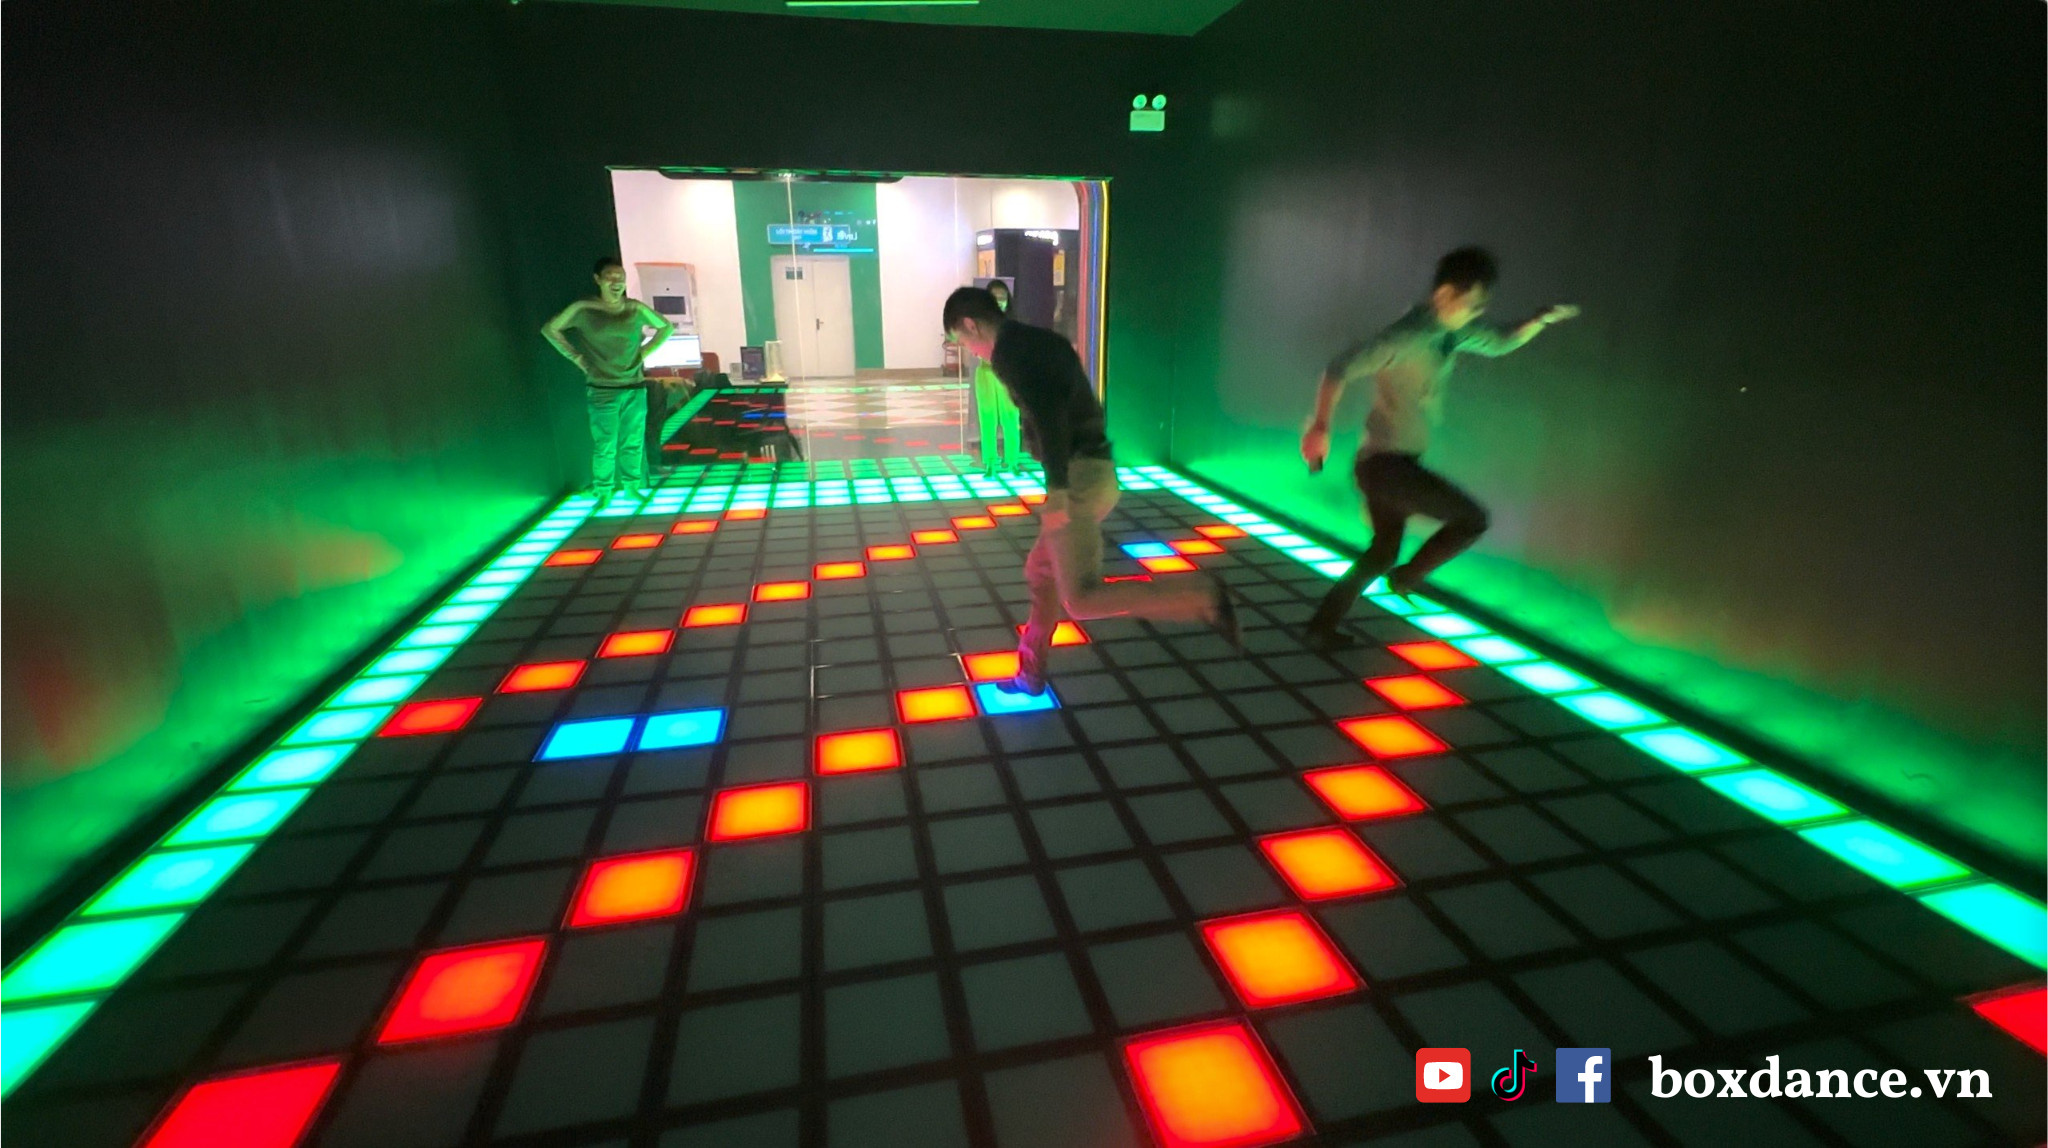 Box Dance – Fitness Gaming: Xu hướng mới đang phát triển ở Việt Nam - Ảnh 2.